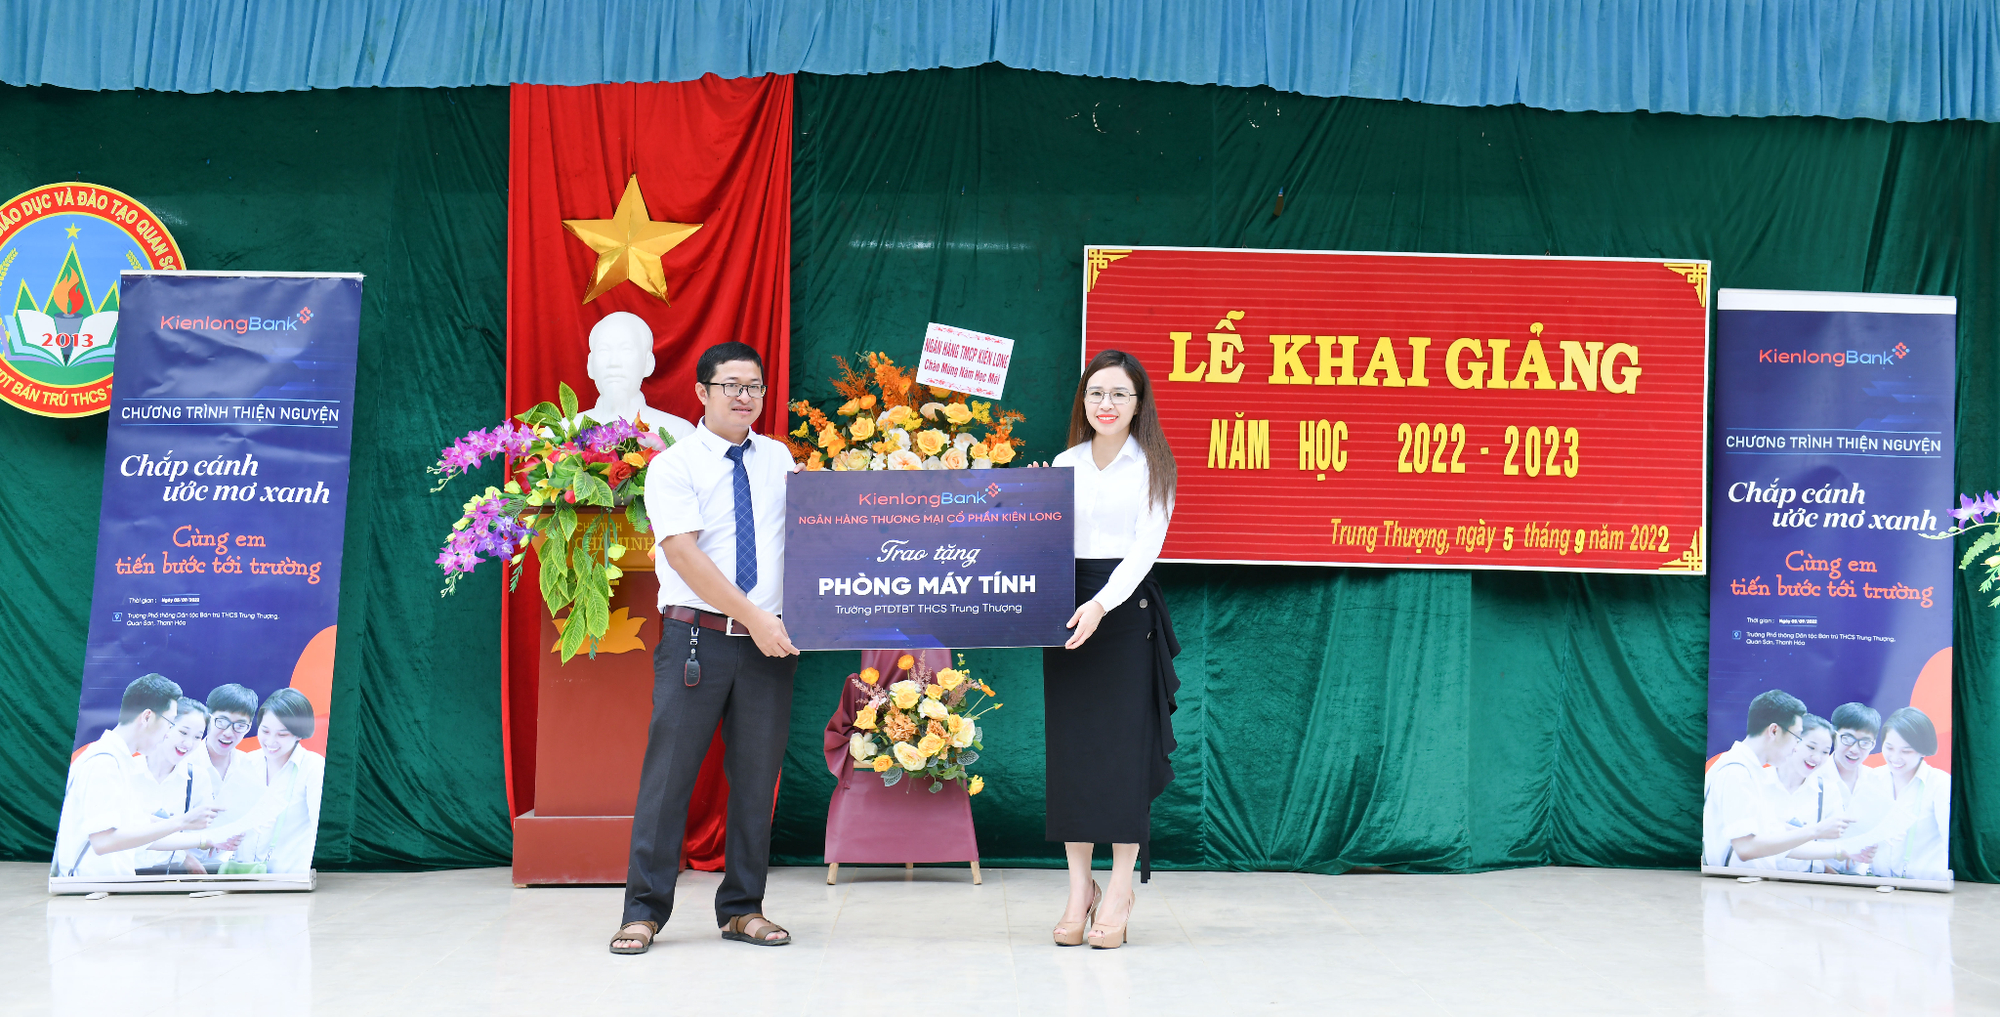   Bà Trần Thị Thu Hằng, Chủ tịch HĐQT Ngân hàng Kiên Long đại diện trao tặng Phòng máy tính cho Ban Lãnh đạo trường PTDTBT THCS Trung Thượng.  